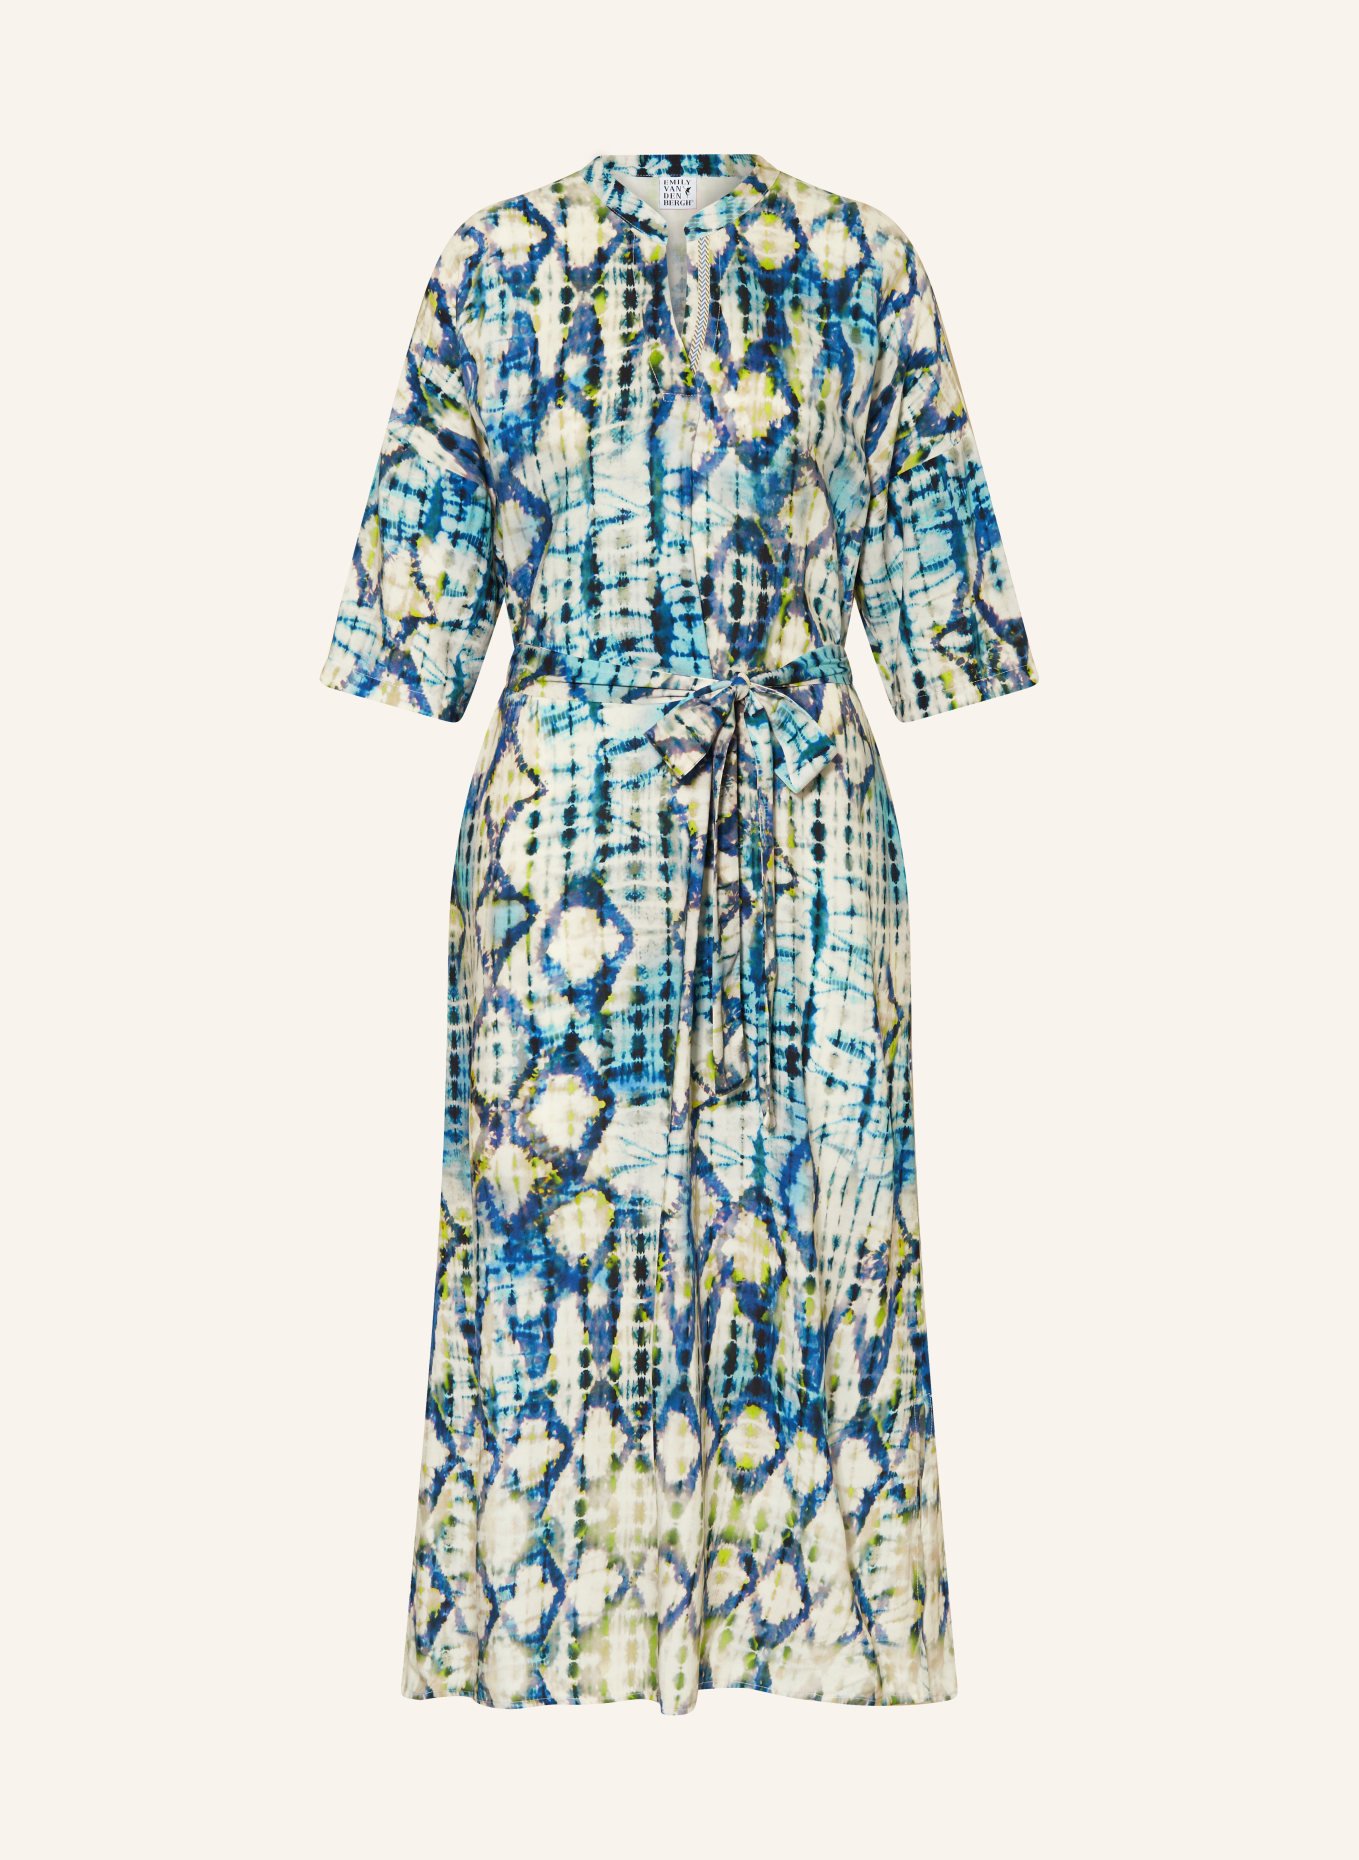 Emily VAN DEN BERGH Kleid mit 3/4-Arm, Farbe: BLAU/ HELLGRÜN/ WEISS (Bild 1)